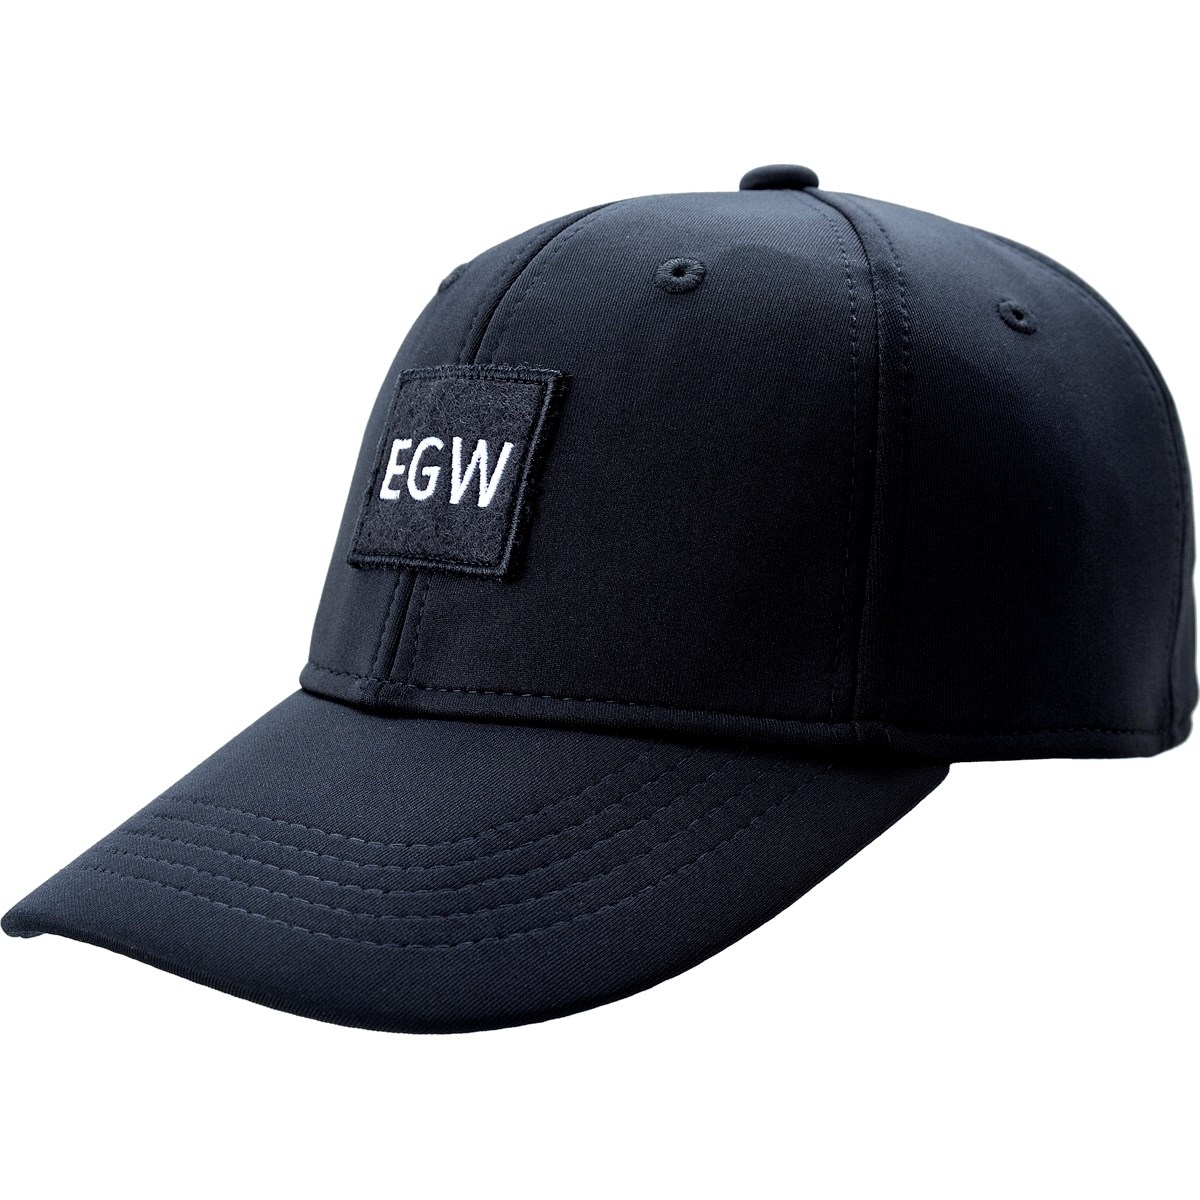 [アウトレット] [在庫限りのお買い得商品] プーマ PUMA EGW ワーディングキャップ プーマ ブラック 01 レディース ゴルフウェア 帽子